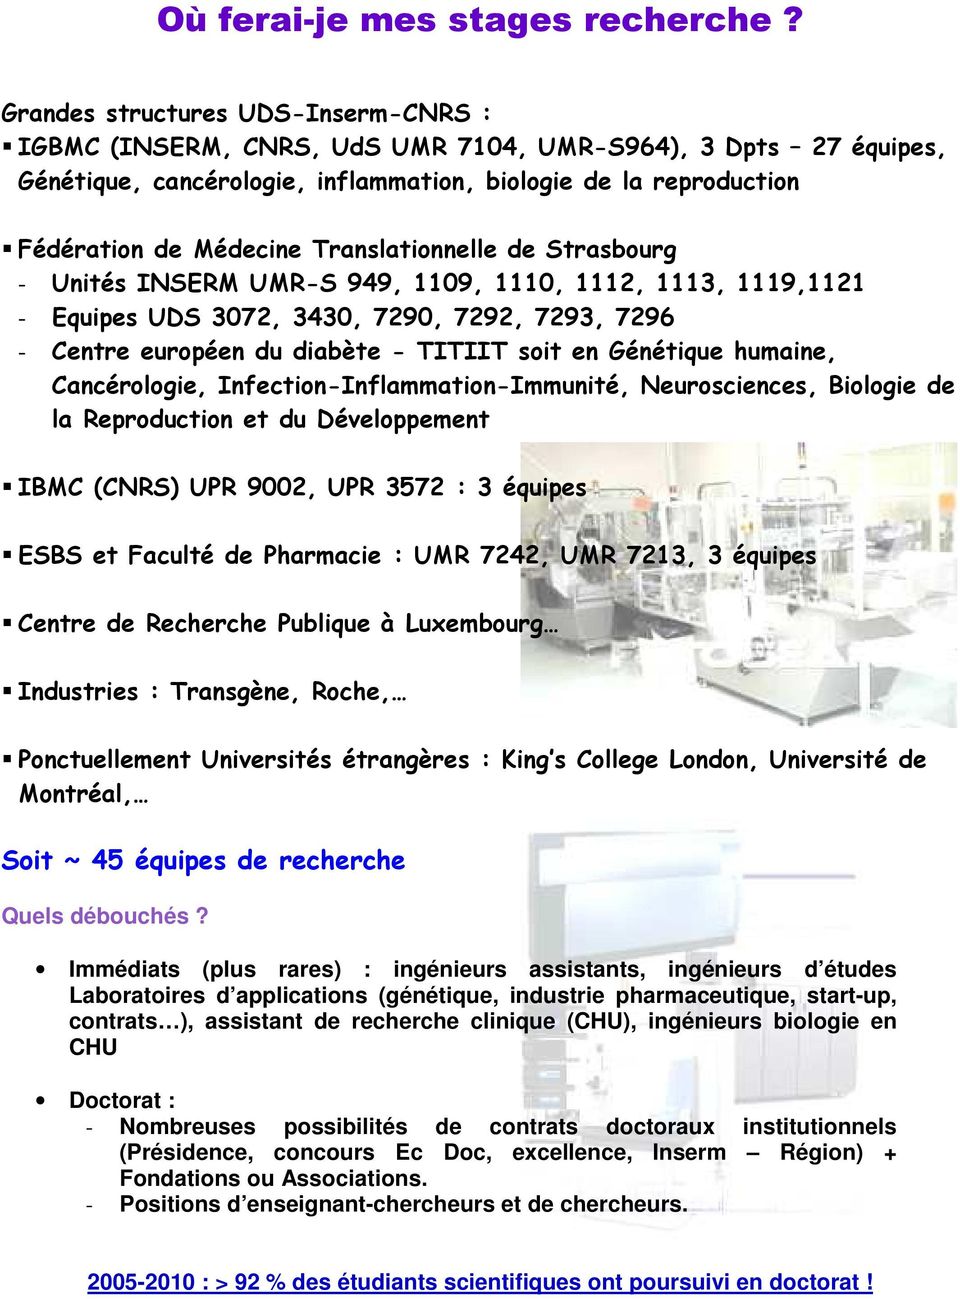 Translationnelle de Strasbourg - Unités INSERM UMR-S 949, 1109, 1110, 1112, 111, 1119,1121 - Equipes UDS 072, 40, 7290, 7292, 729, 729 - Centre européen du diabète - TITIIT soit en Génétique humaine,